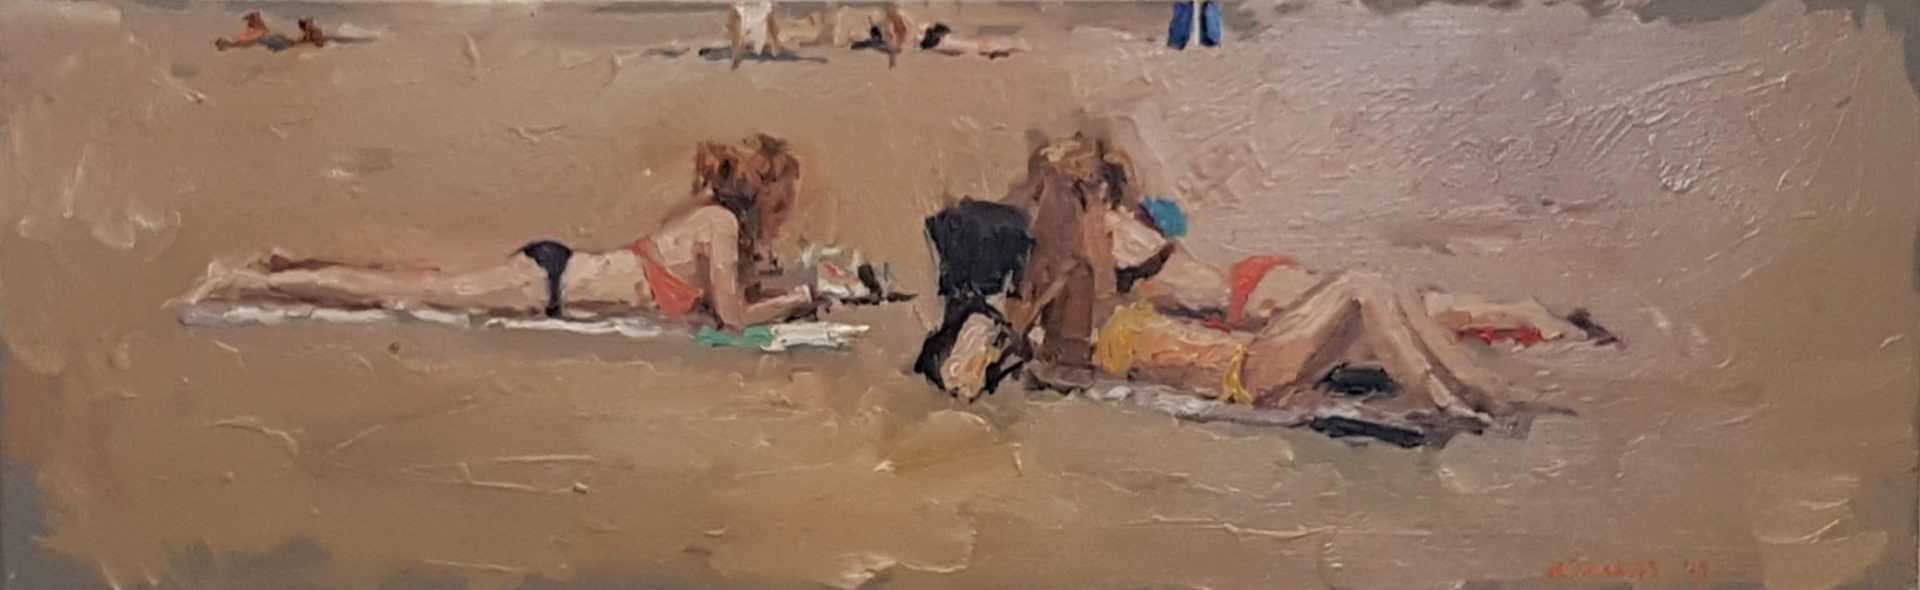 Rob Jacobs schildert doek van 50x20cm, op het strand, in Katwijk, Zuid-Holland.